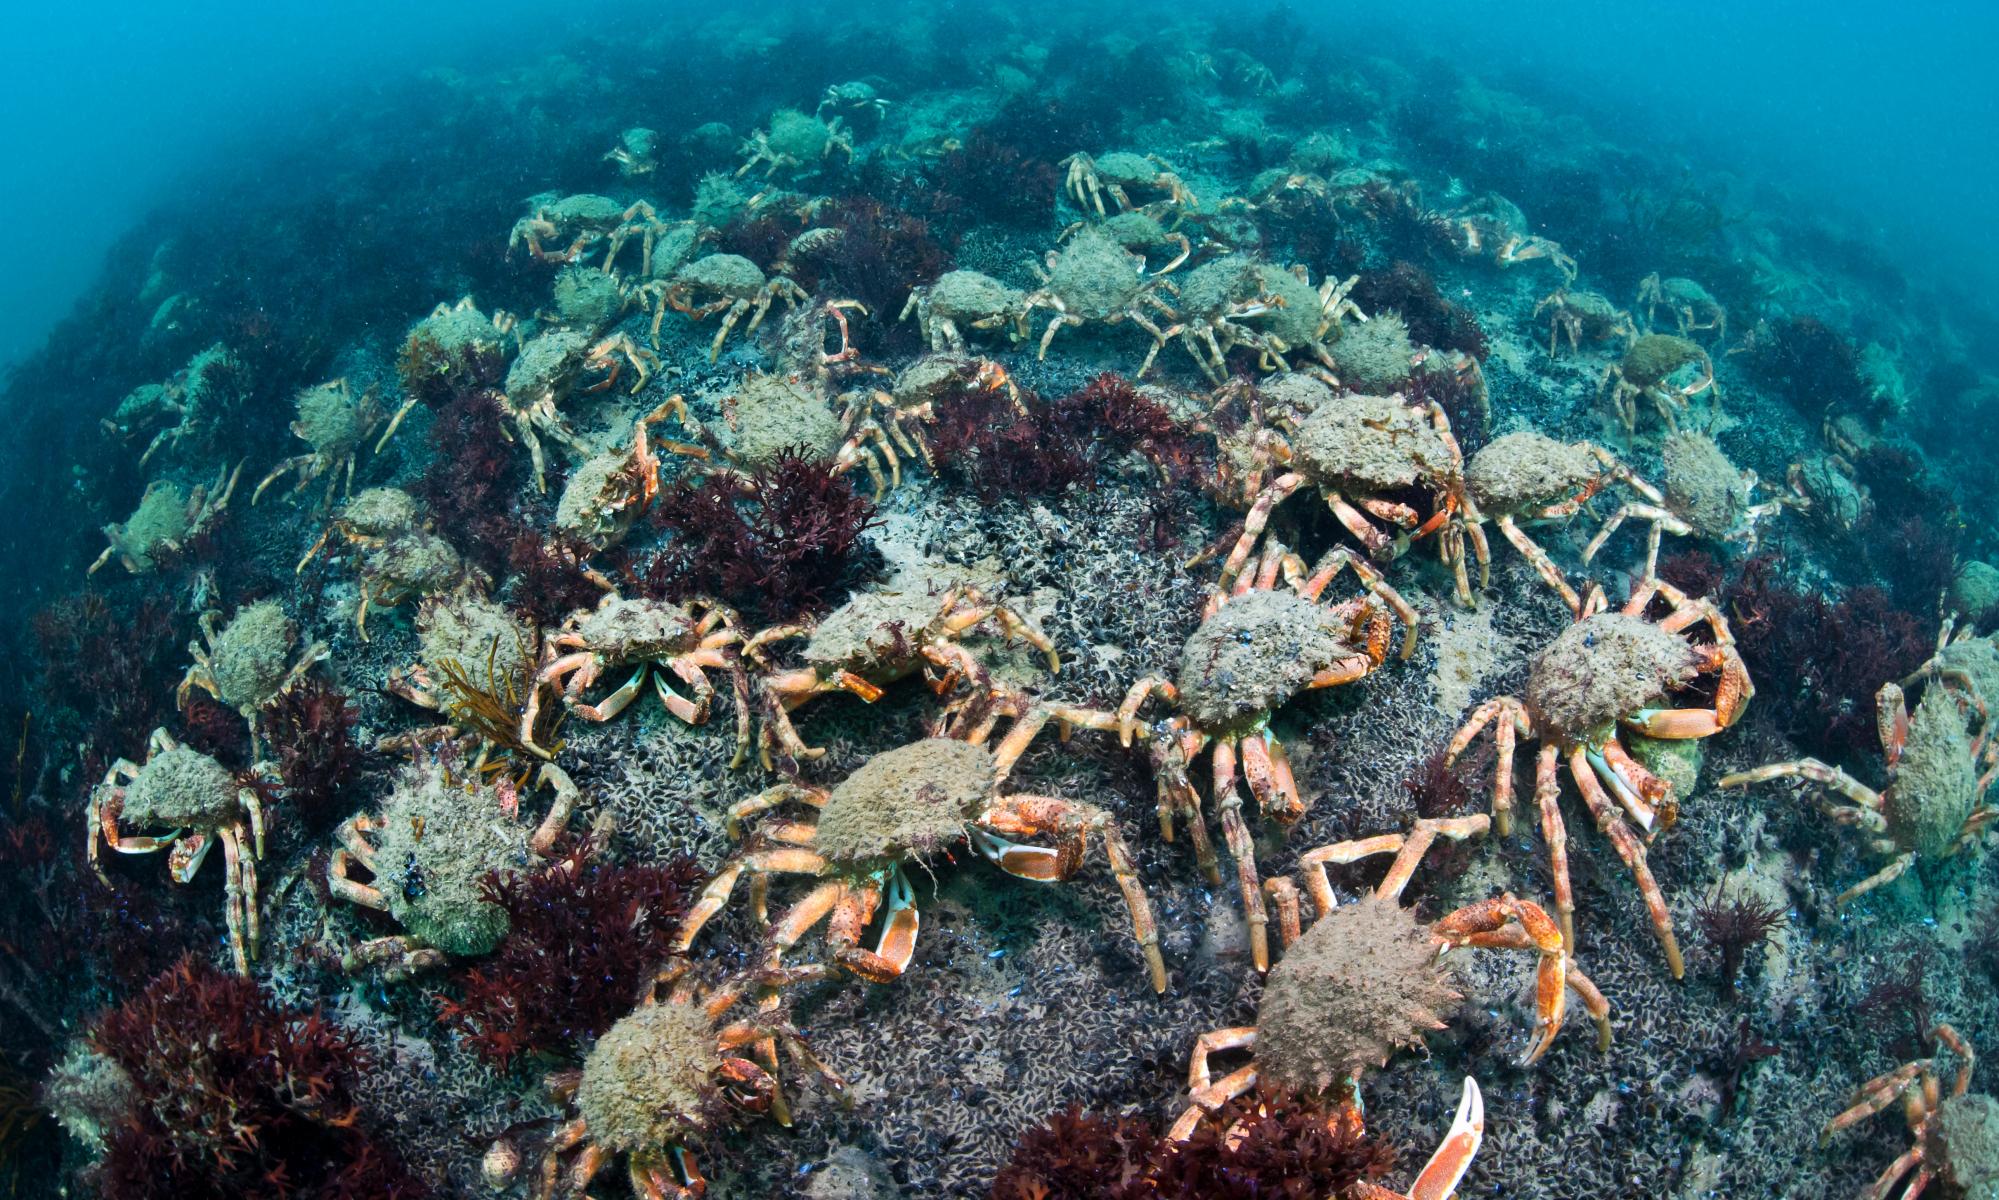 Venomous spider crabs swarm Cornish beaches as sea temperatures rise